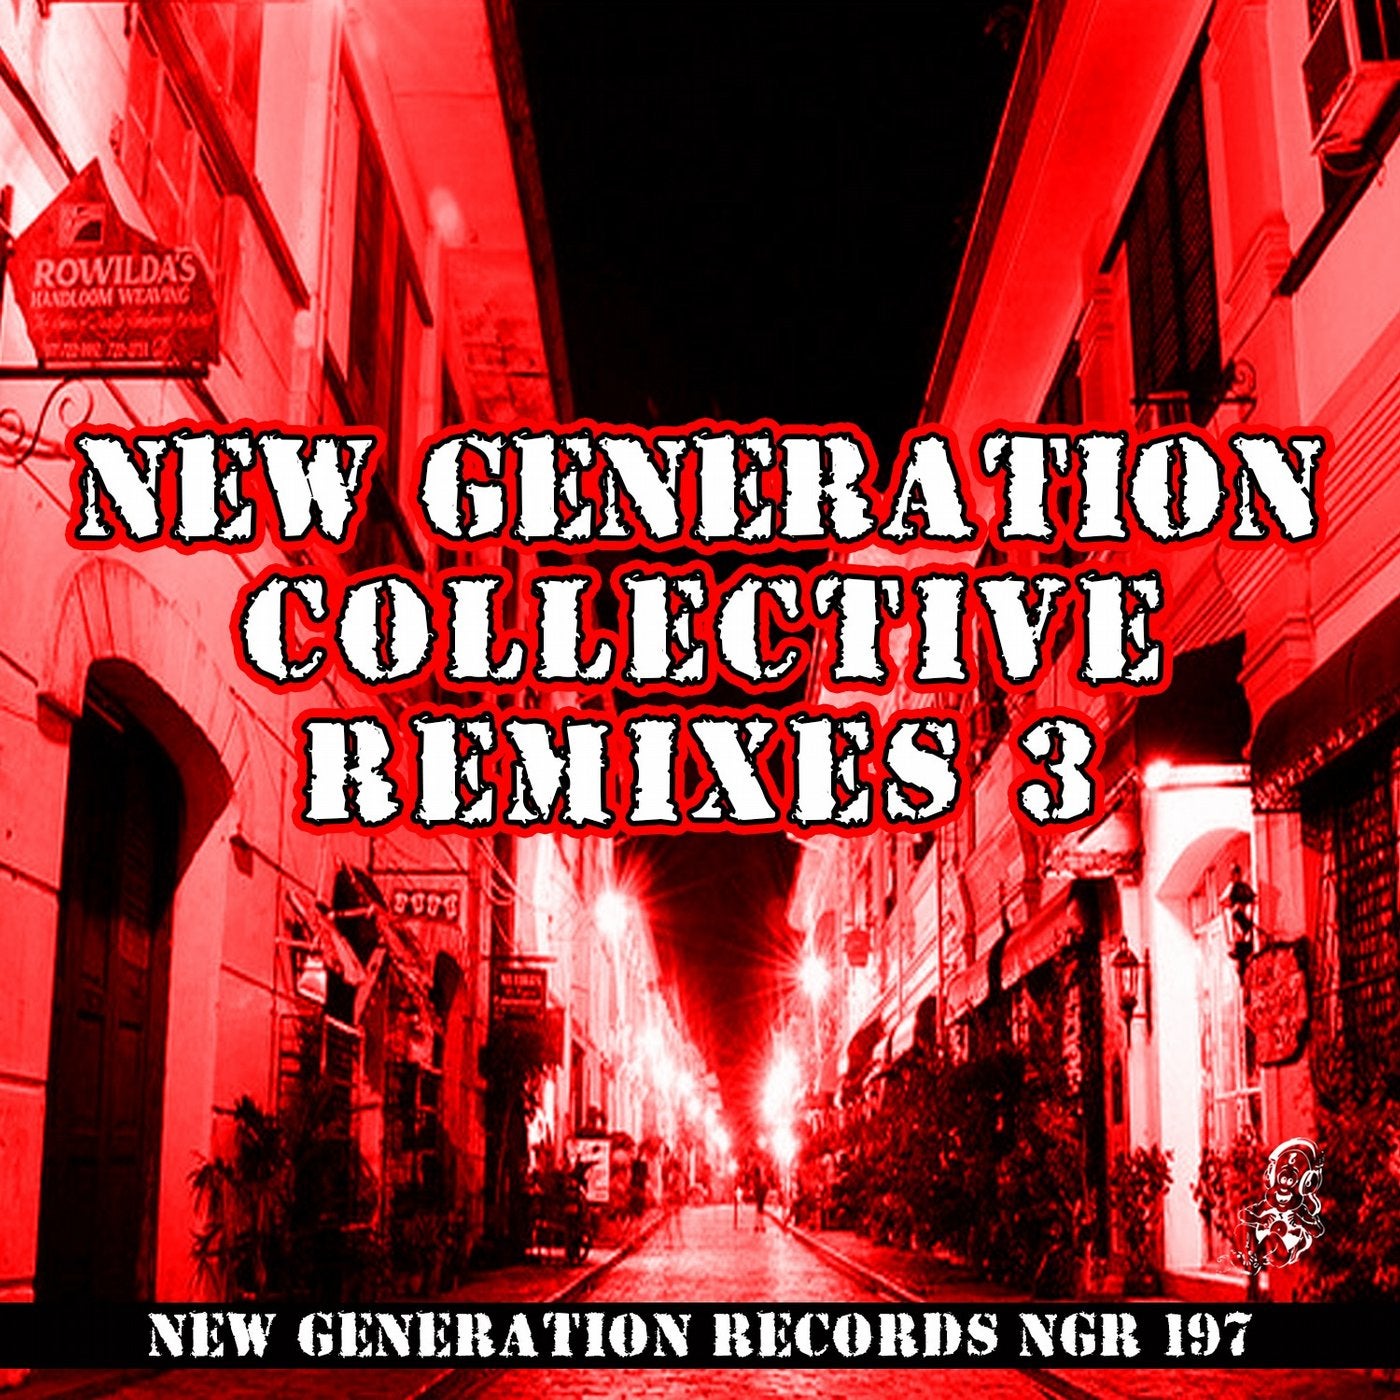 New Generation Collective Remixes, Vol. 3